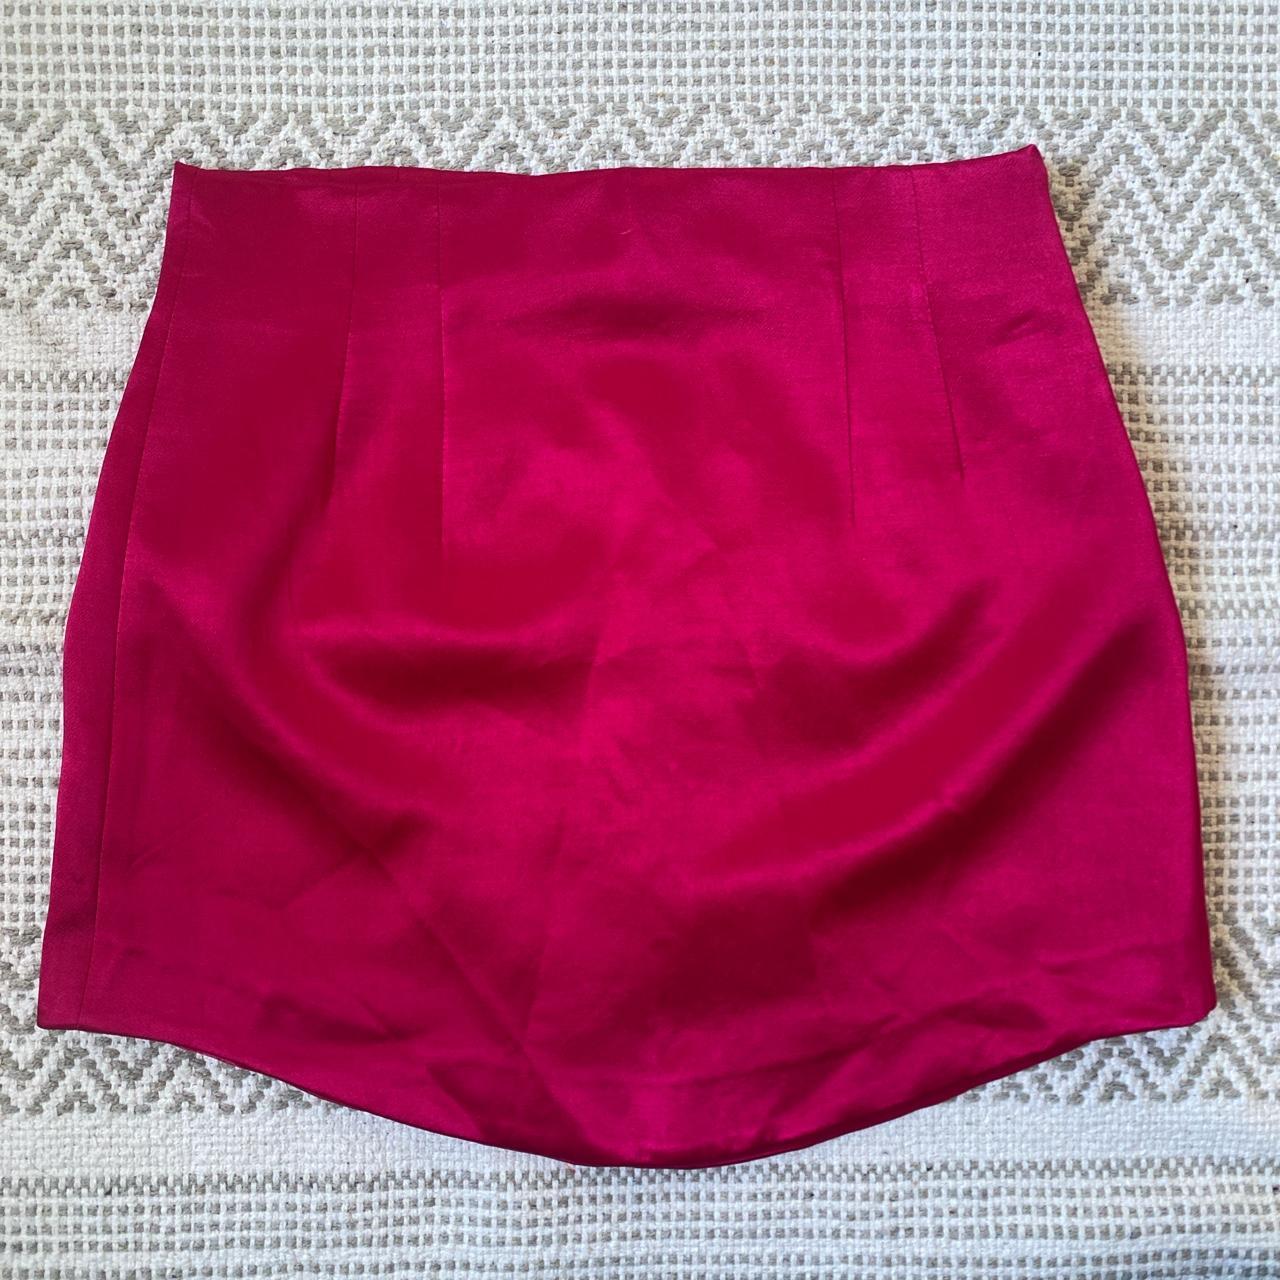 Zara Women's Pink Skirt | Depop